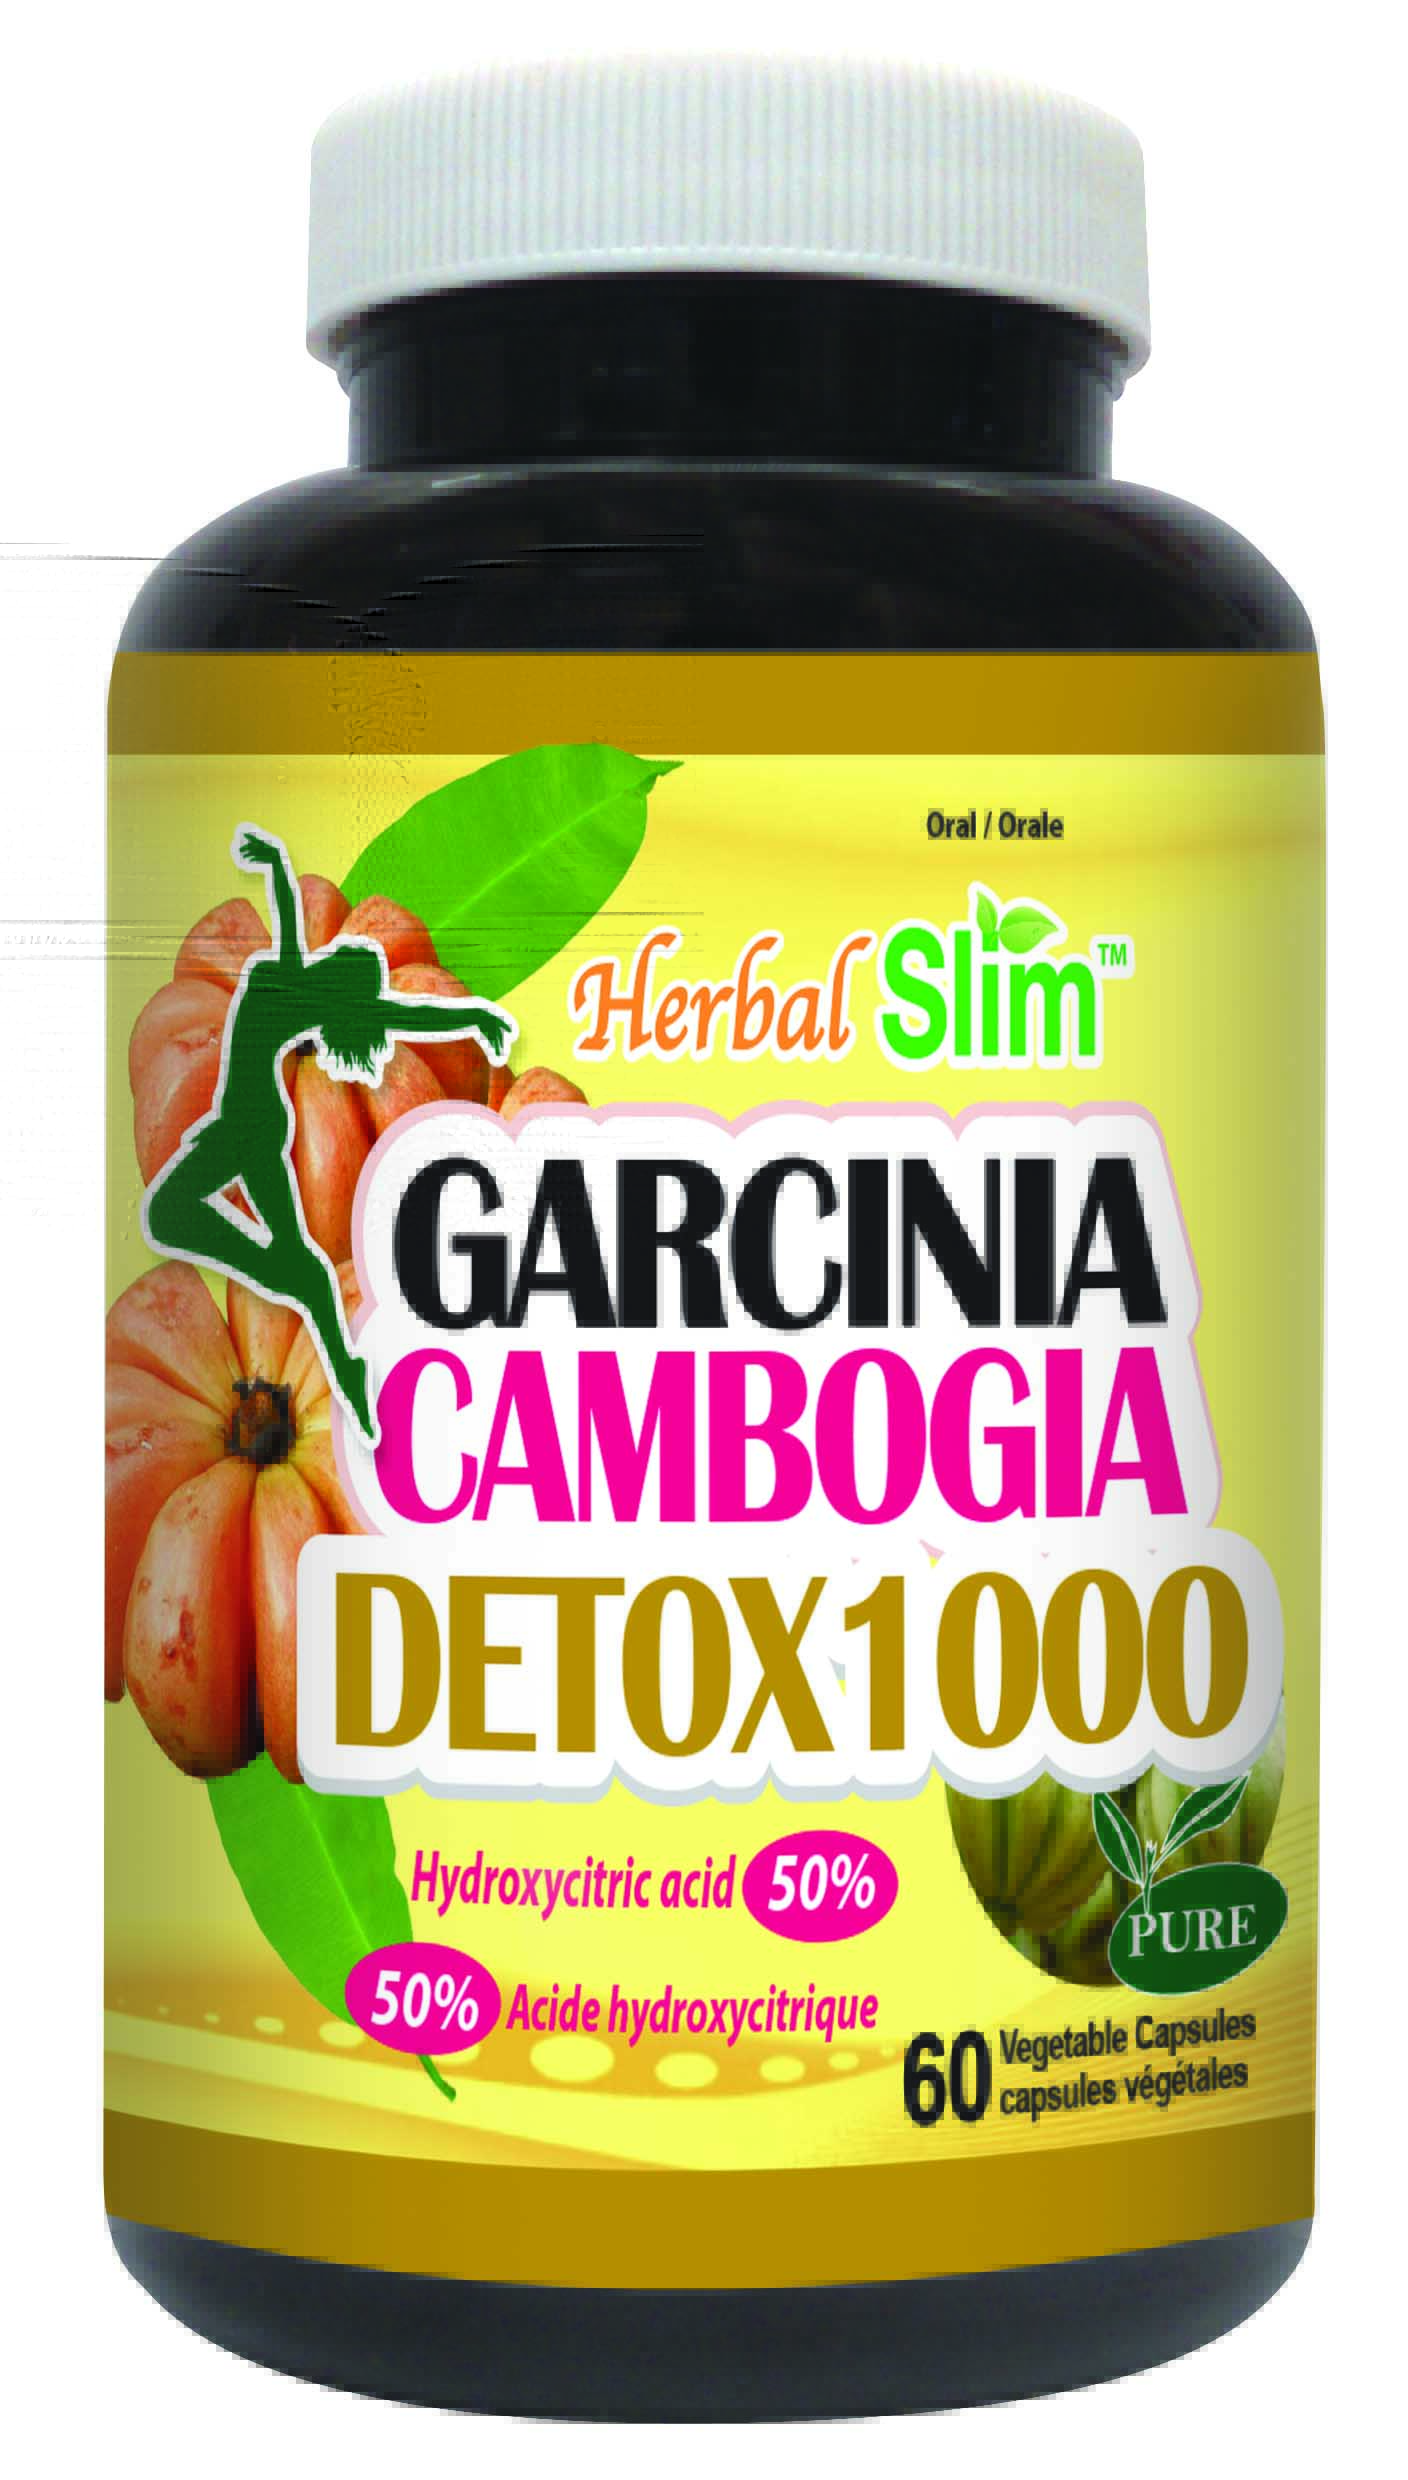 HerbalSlim GARCINIA CAMBOGIA DETOX 1000